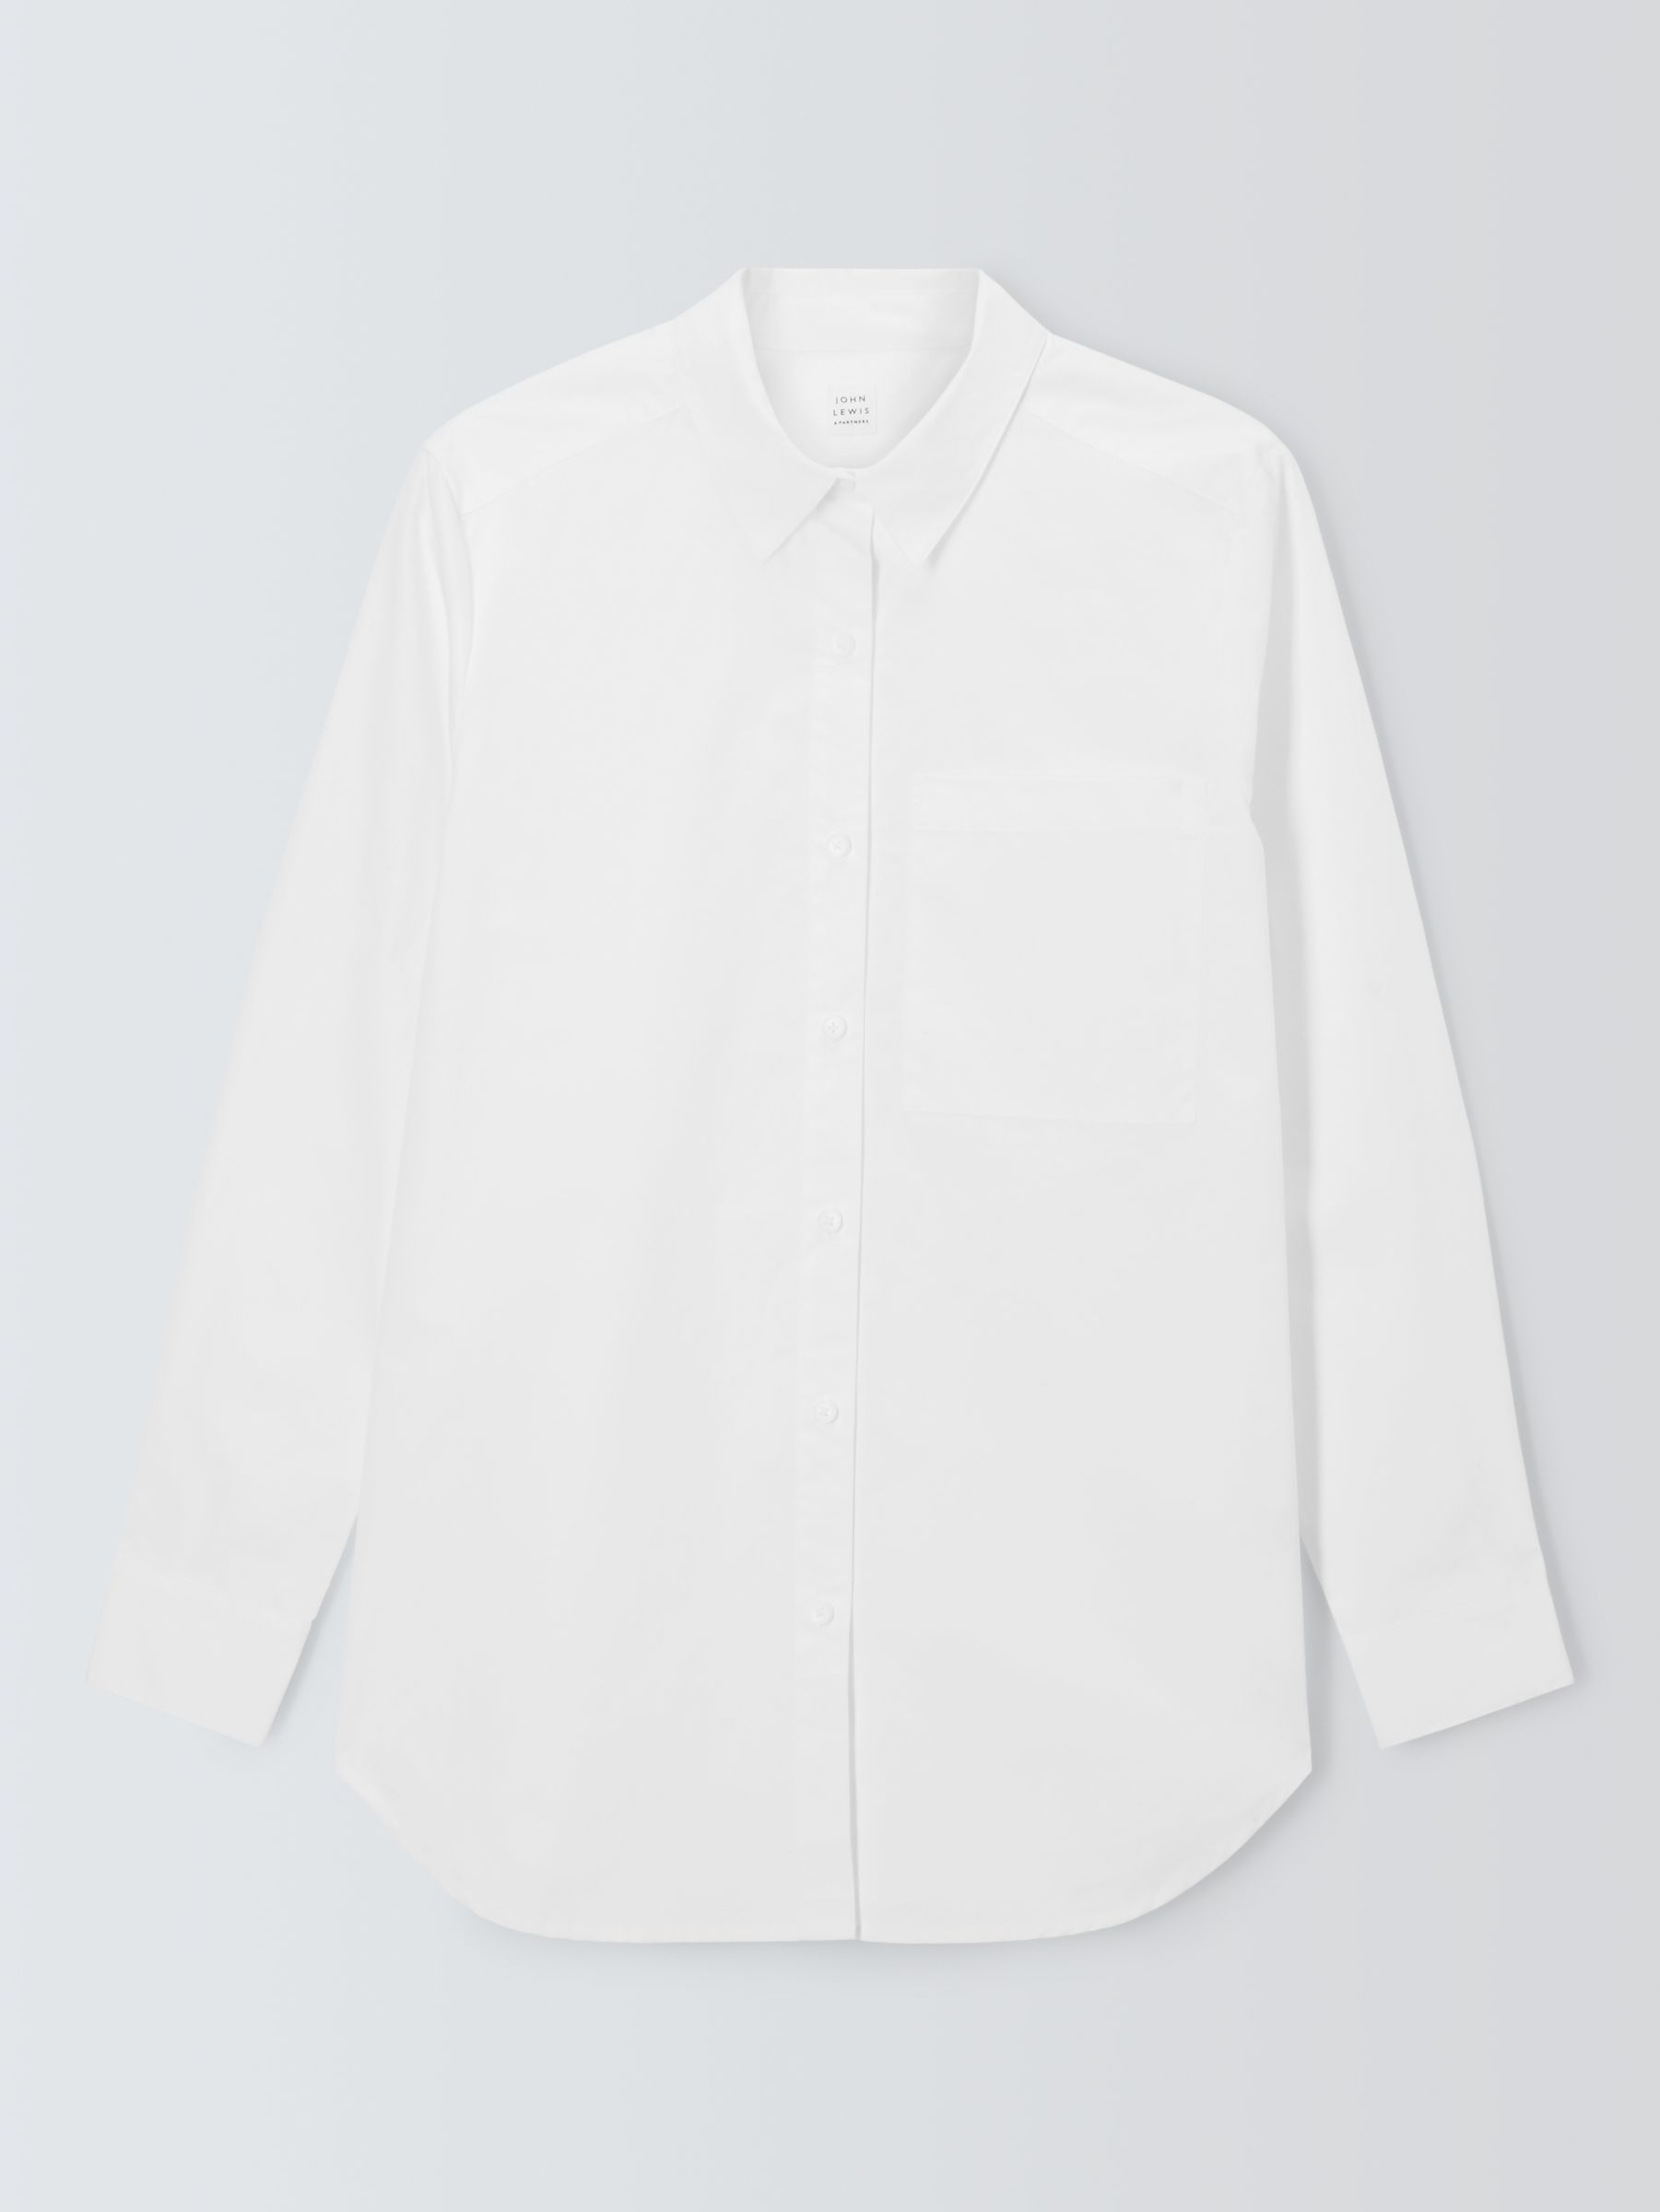 John Lewis Cotton Relaxed Shirt, White at John Lewis & Partners